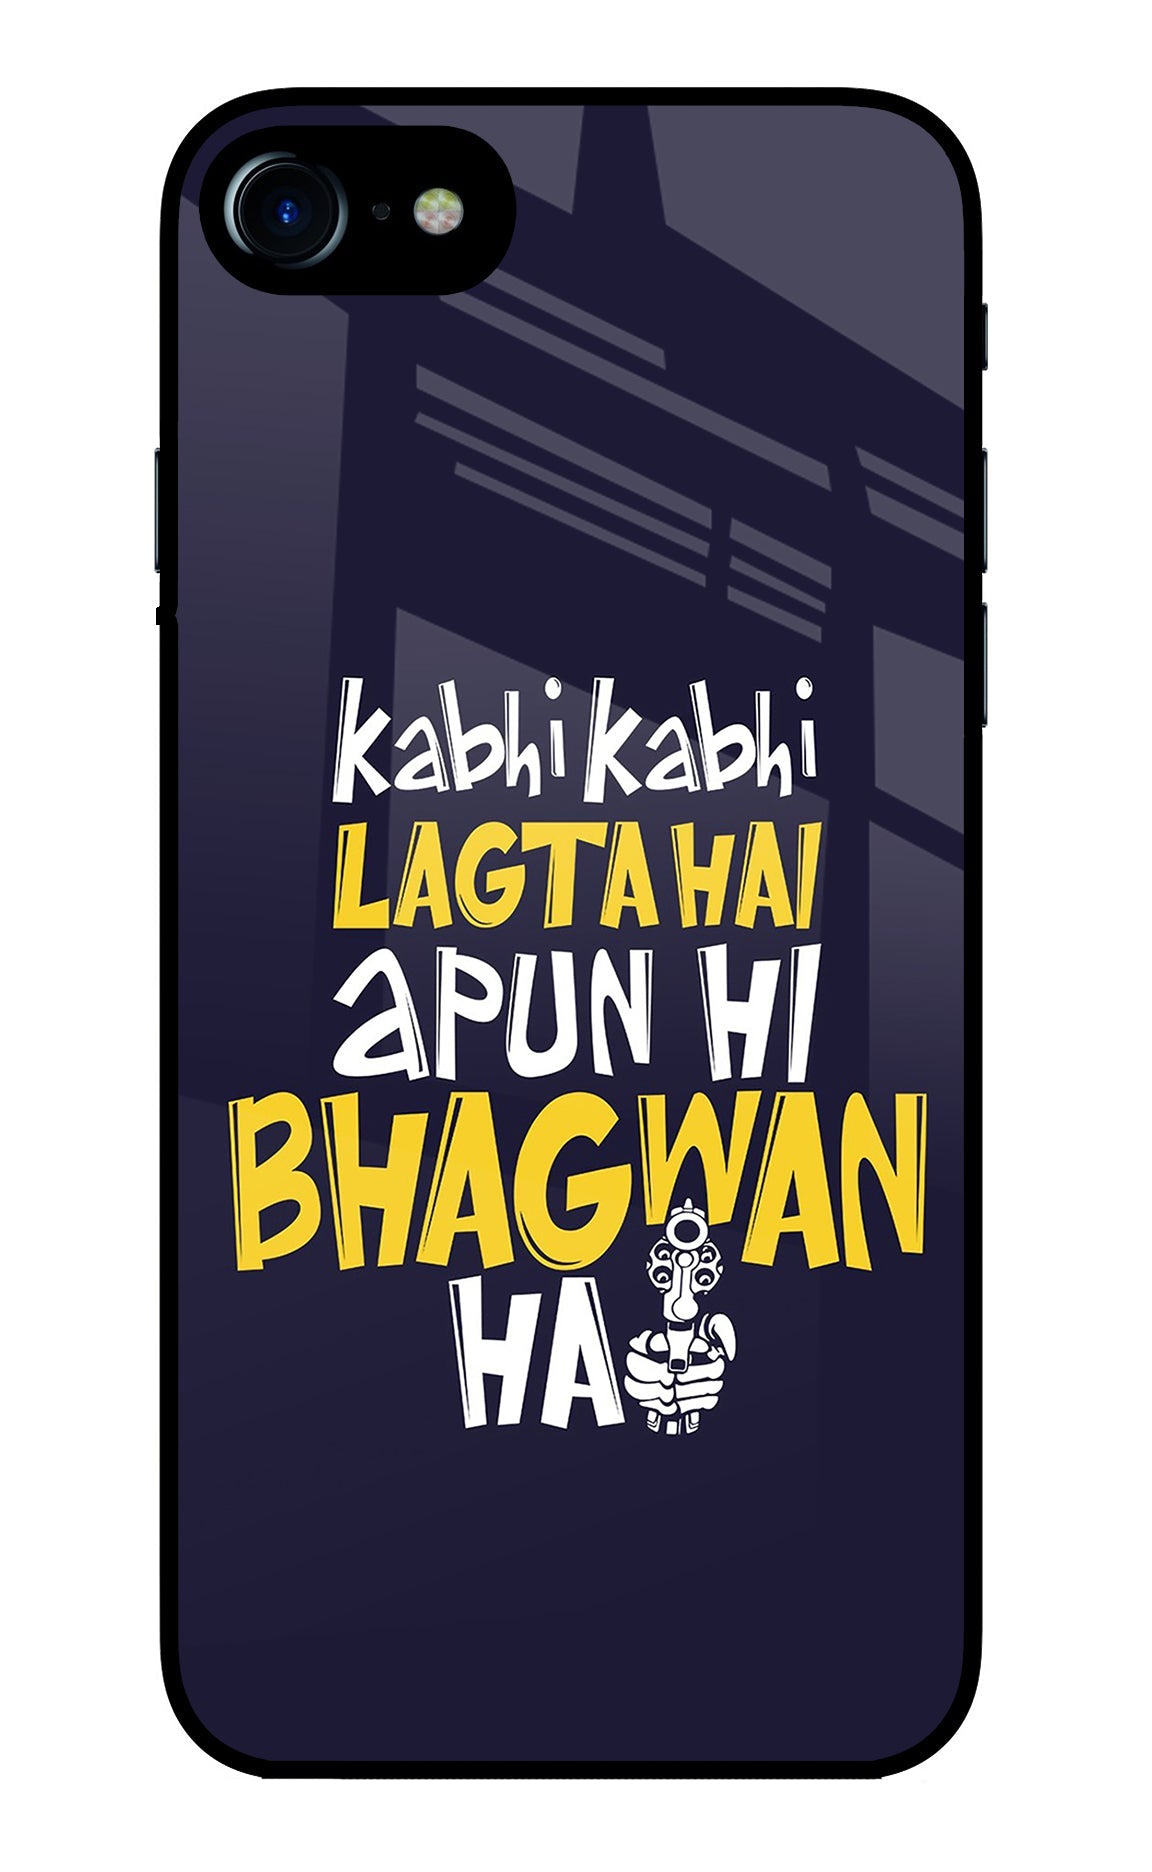 Kabhi Kabhi Lagta Hai Apun Hi Bhagwan Hai iPhone 7/7s Glass Case